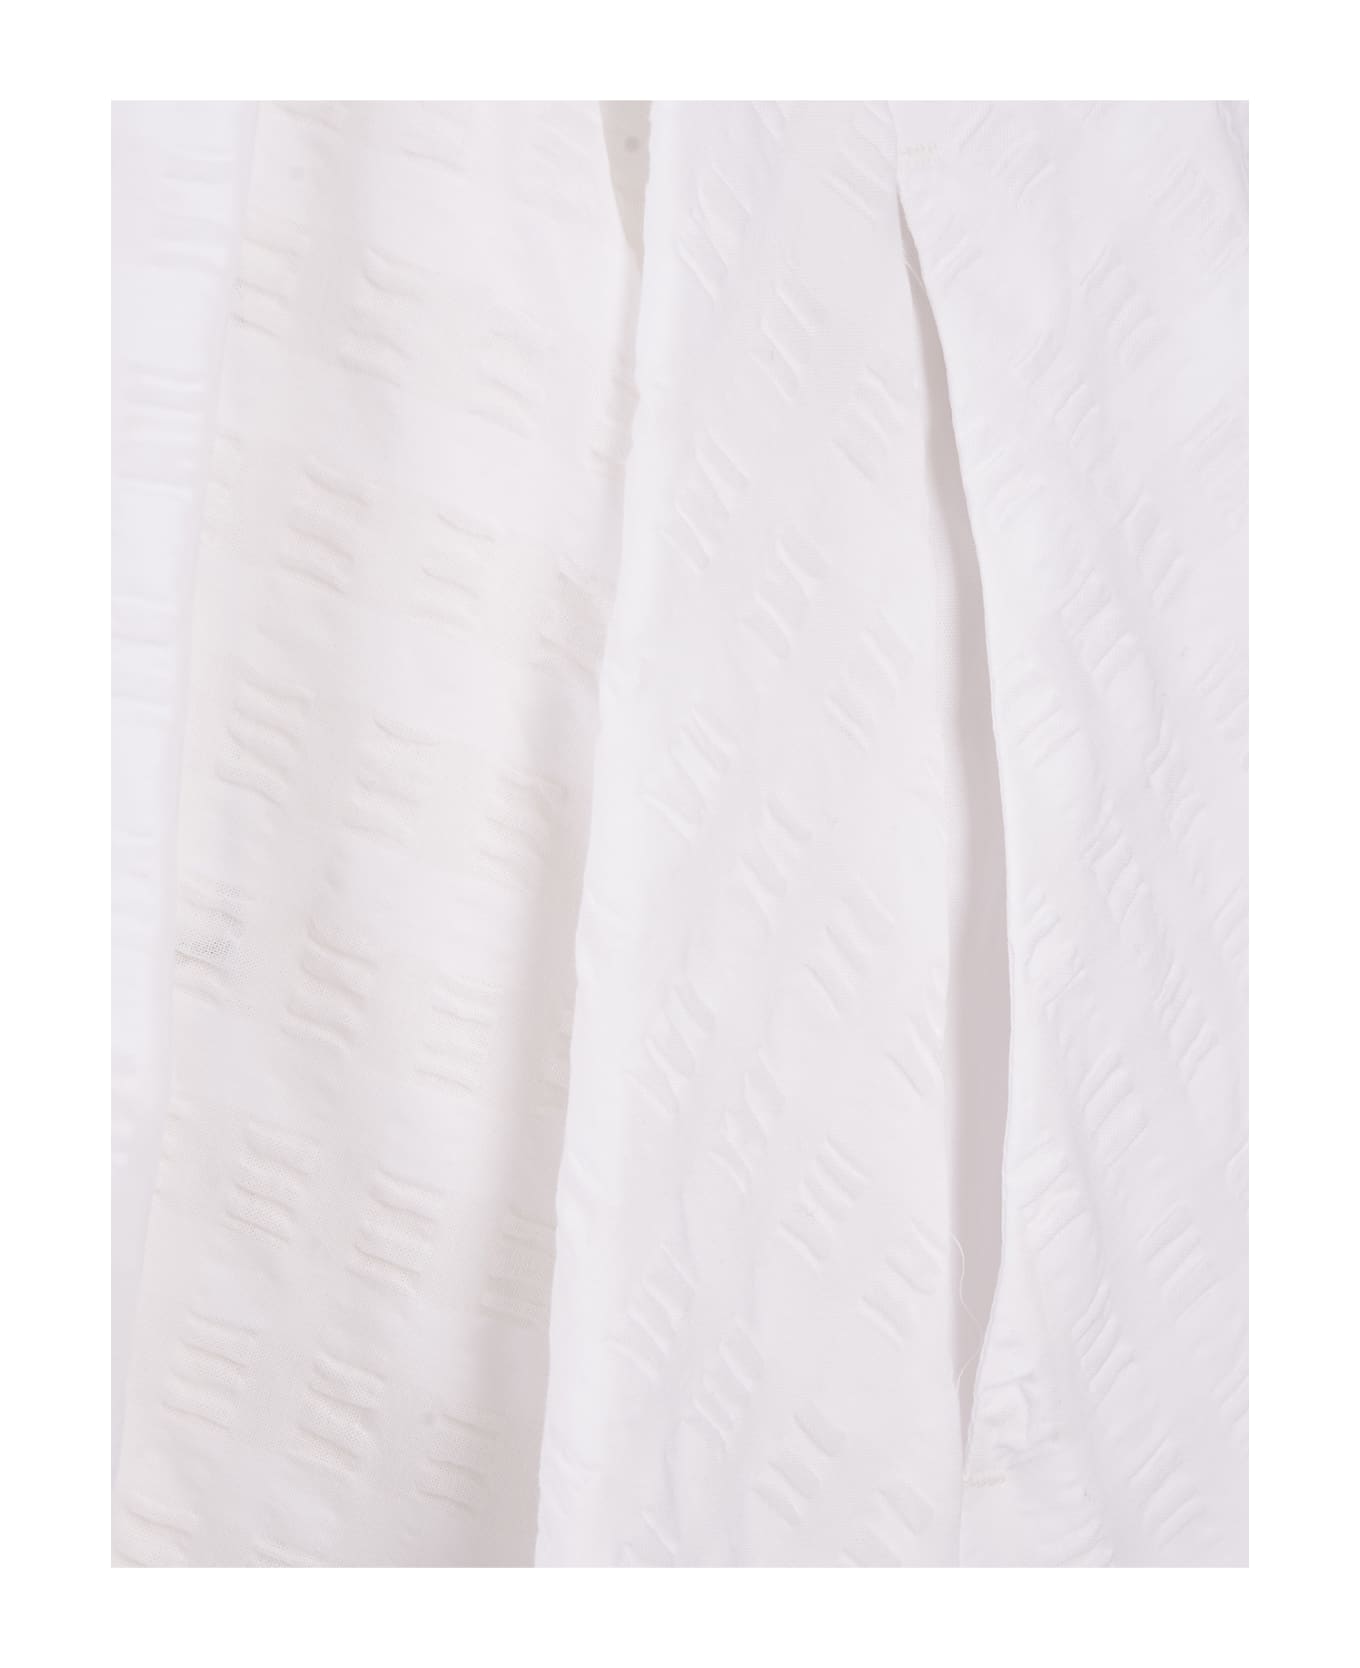 MSGM Long White Skirt In Seersucker - White